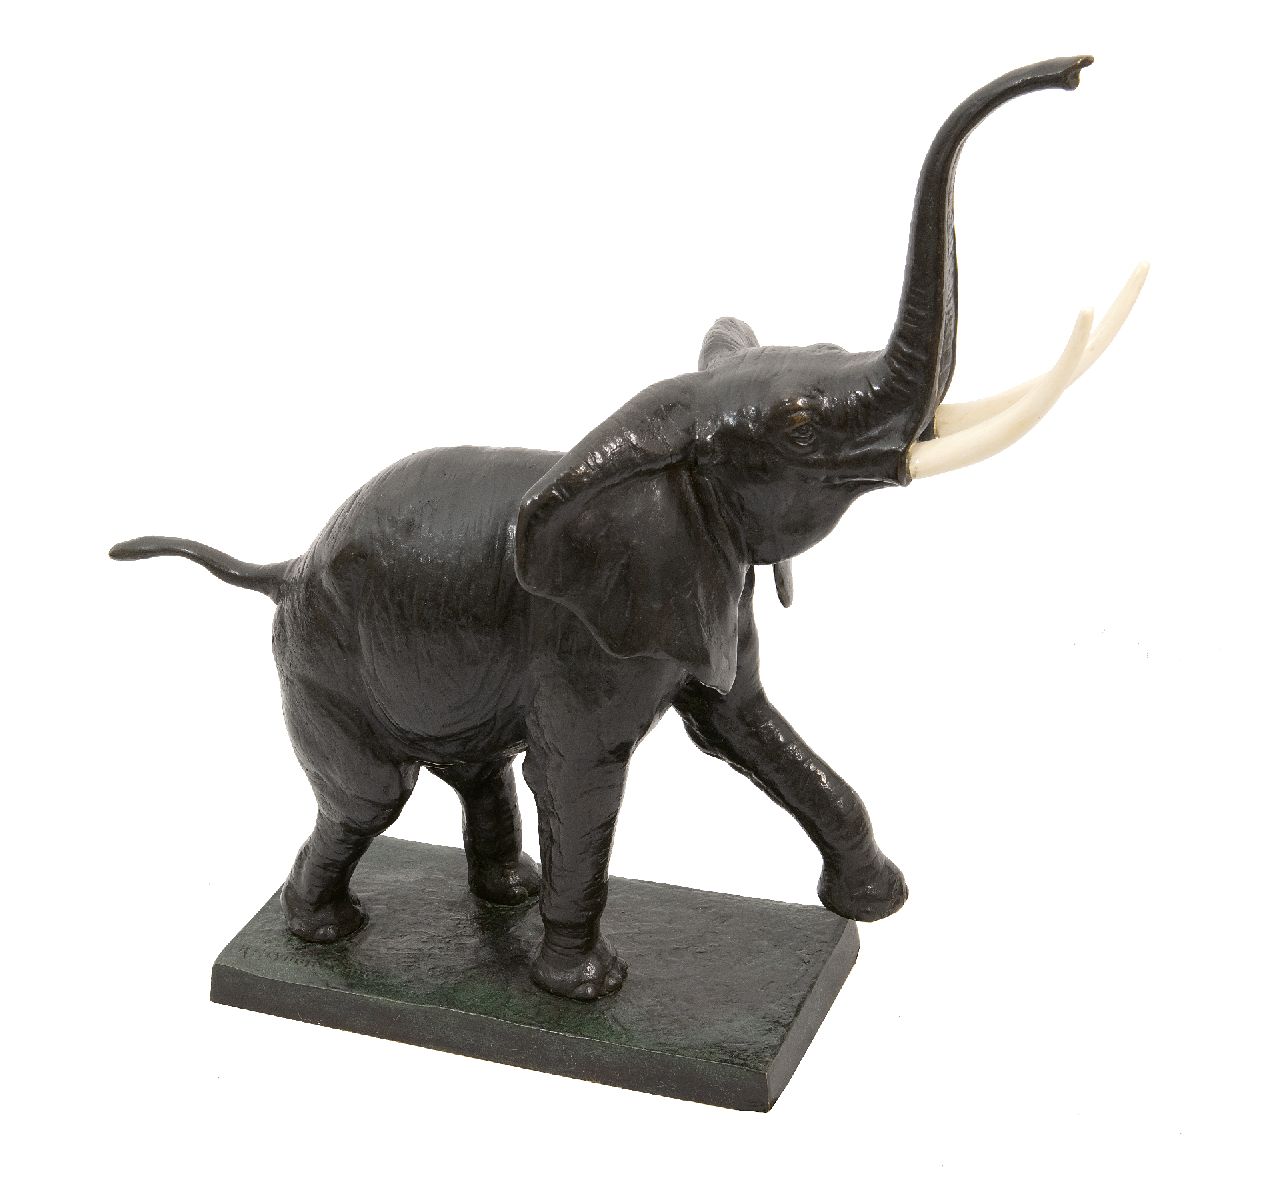 Heynen-Dumont K.  | Karl Heynen-Dumont | Beelden en objecten te koop aangeboden | Lopende olifant, brons en ivoor 44,0 x 48,0 cm, gesigneerd op basis